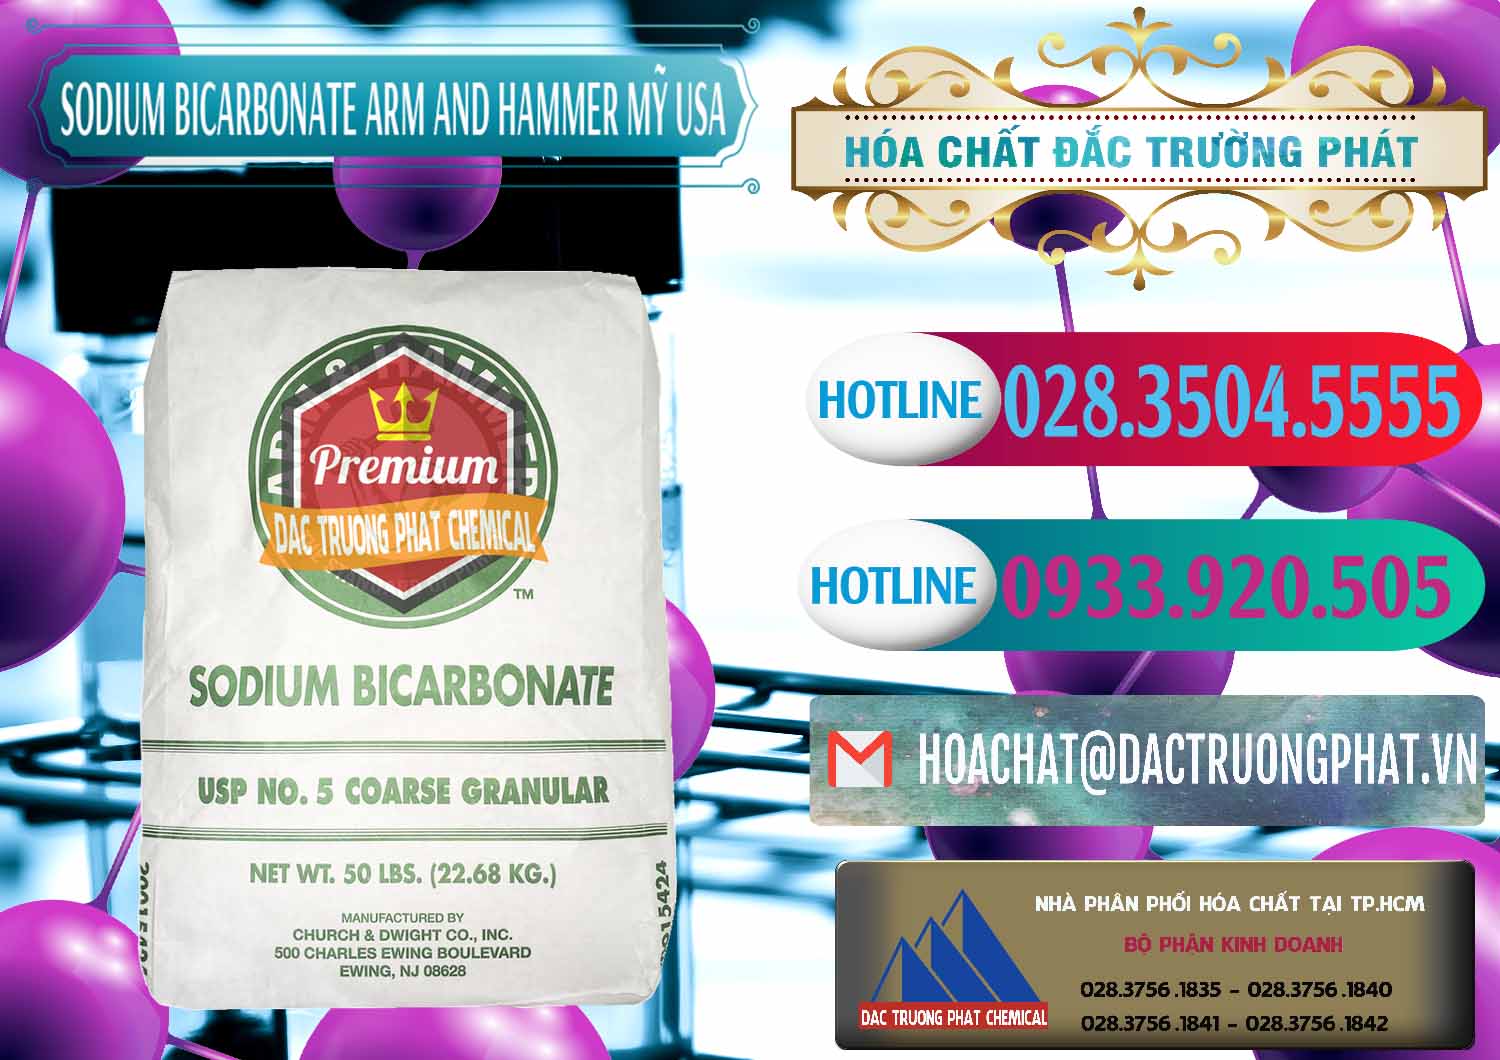 Cty chuyên bán ( cung ứng ) Sodium Bicarbonate – Bicar NaHCO3 Food Grade Arm And Hammer Mỹ USA - 0255 - Phân phối ( kinh doanh ) hóa chất tại TP.HCM - truongphat.vn